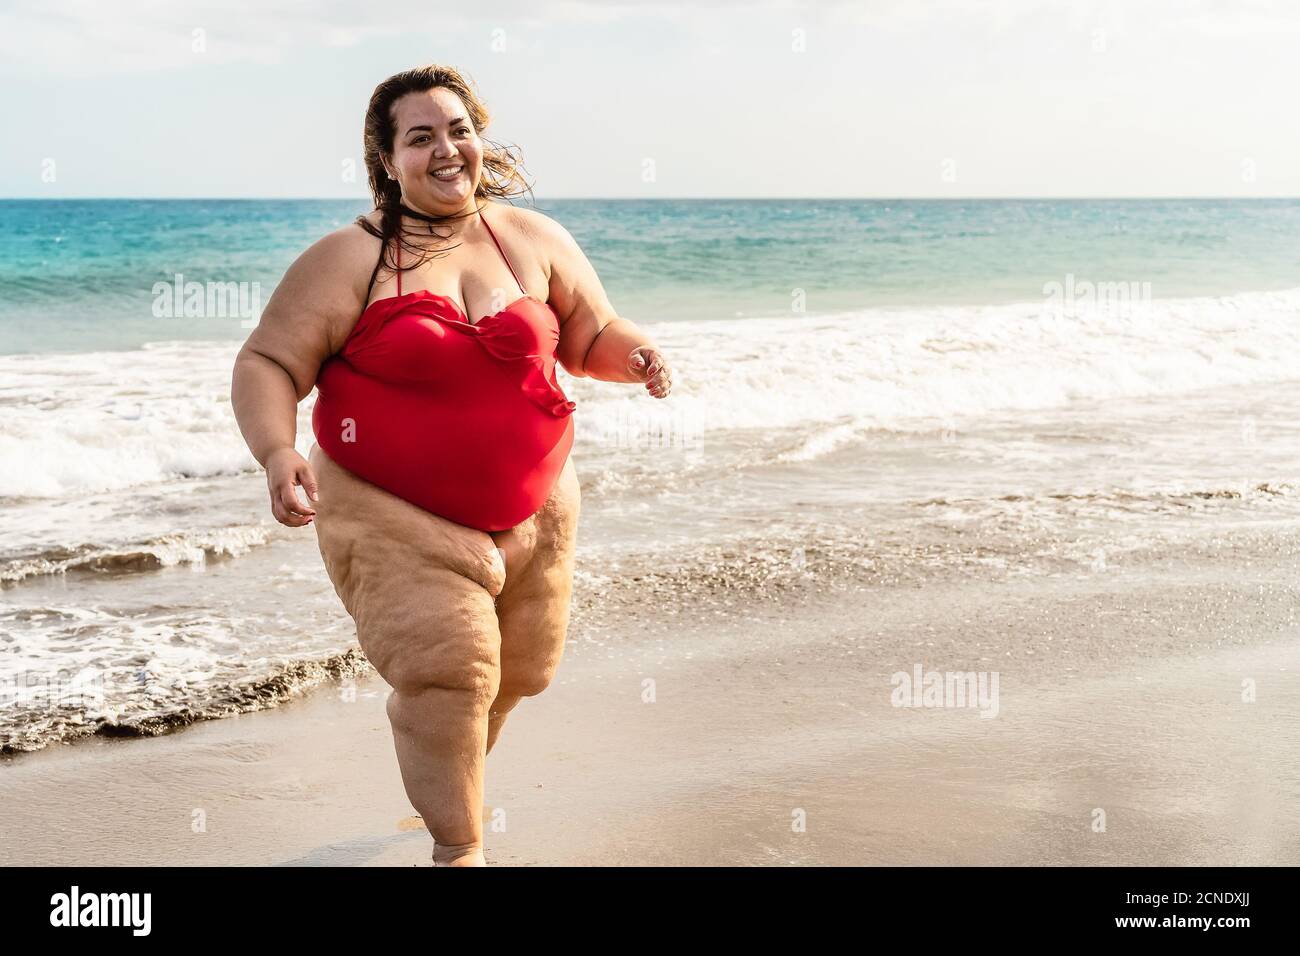 Bonne femme de taille plus courant sur la plage - Curvy modèle en surpoids  s'amusant pendant les vacances dans une destination tropicale Photo Stock -  Alamy